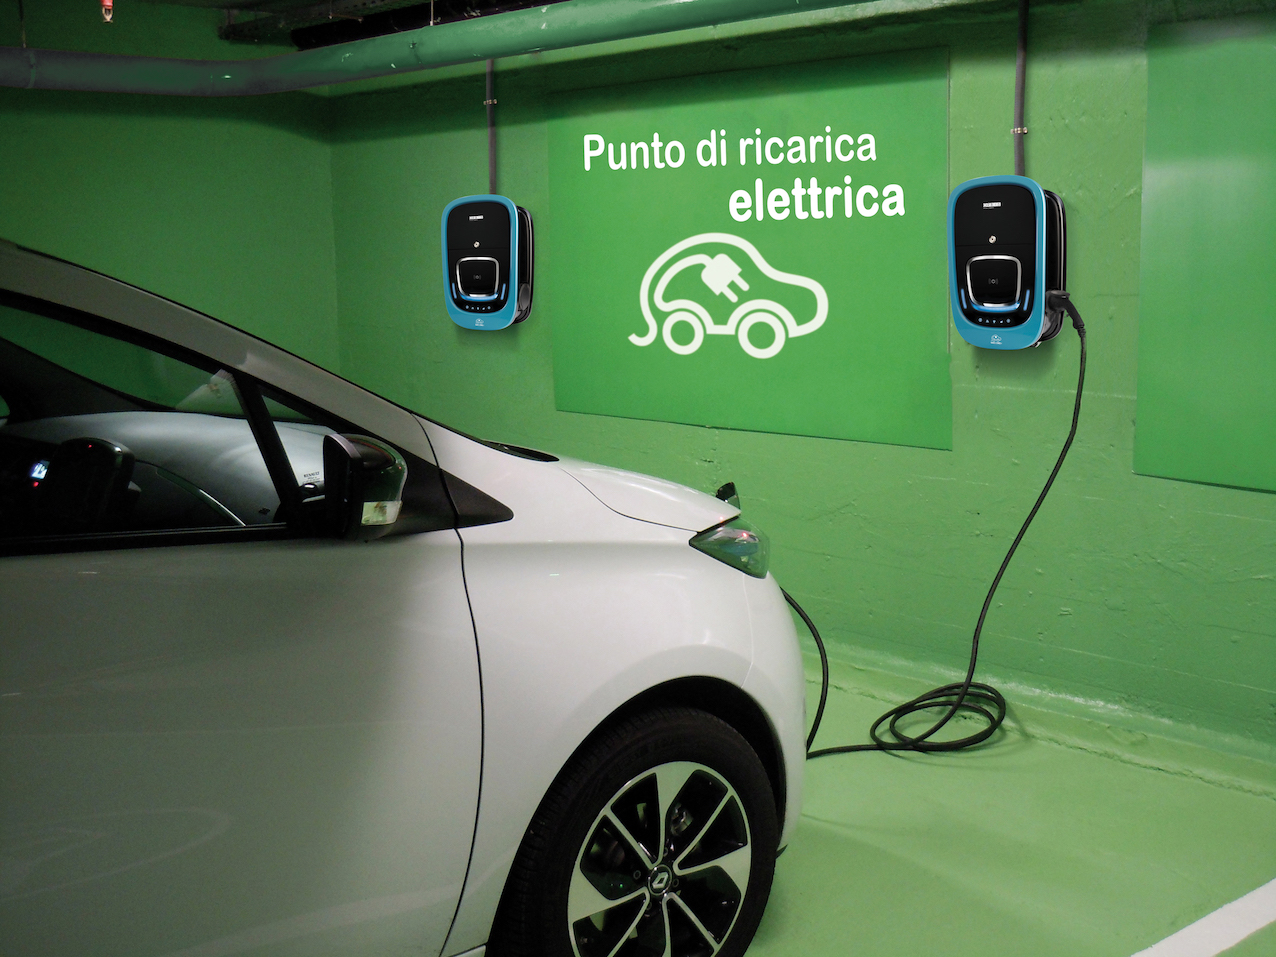 L’auto elettrica sempre carica e sotto controllo: da ORBIS il brevetto della tecnologia che consente la continuità di ricarica del veicolo e il monitoraggio dei consumi